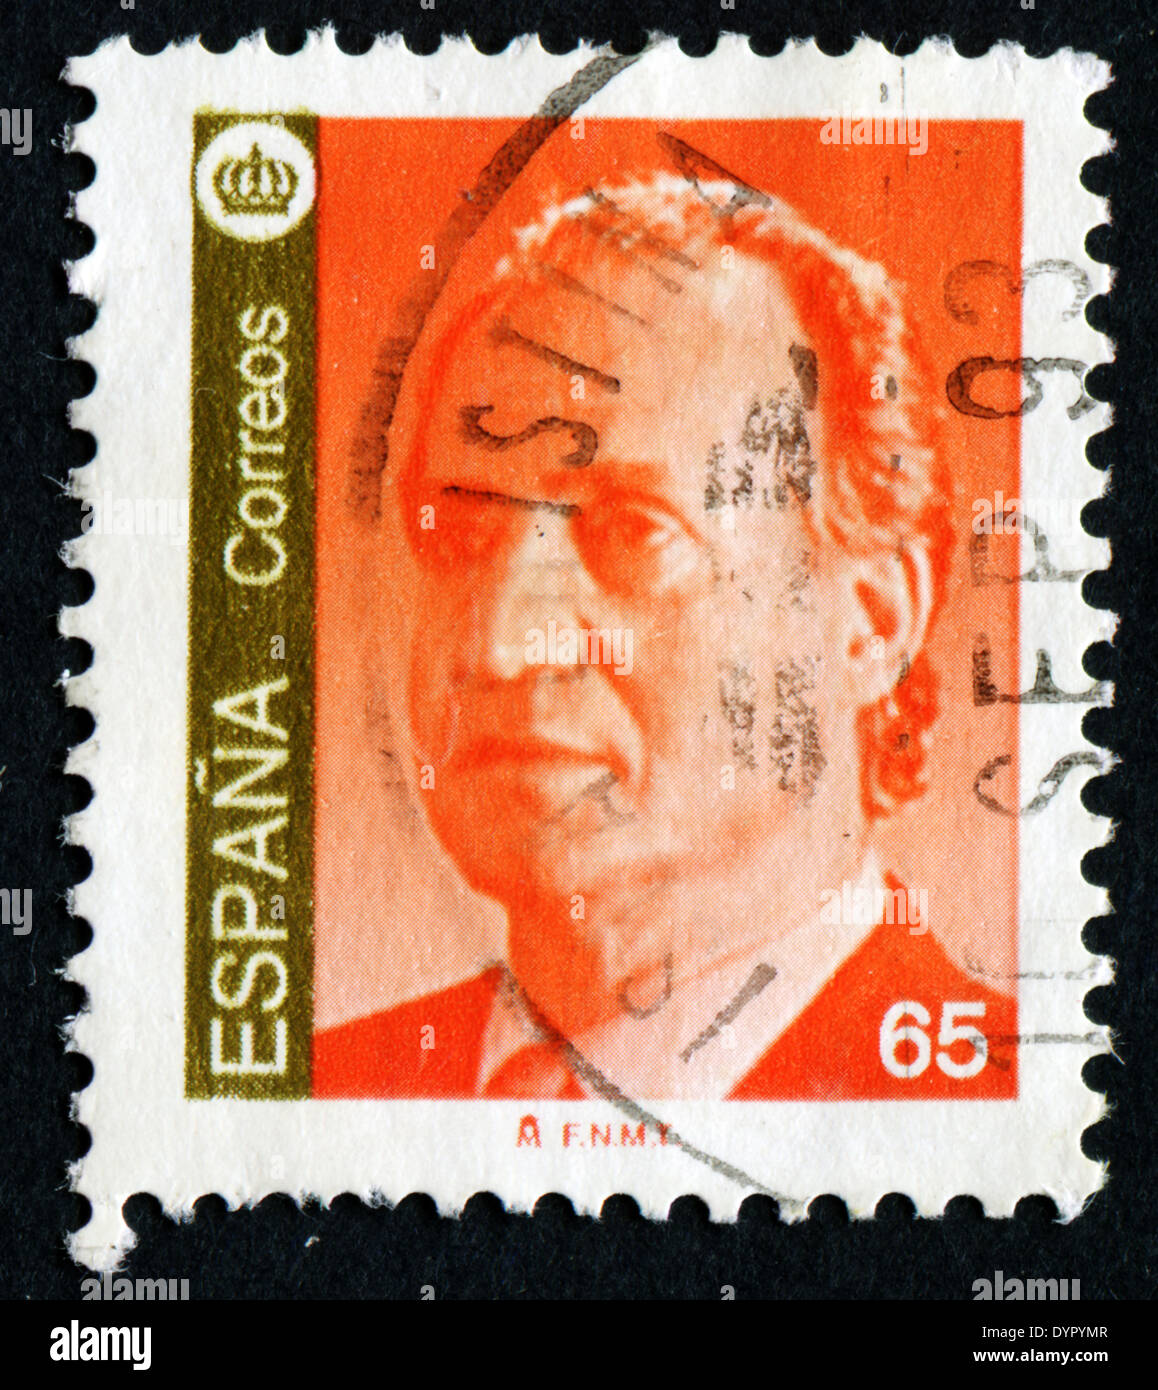 España - circa 1985: un sello impreso en España muestra un retrato del rey Juan Carlos I de España sin inscripción. Foto de stock